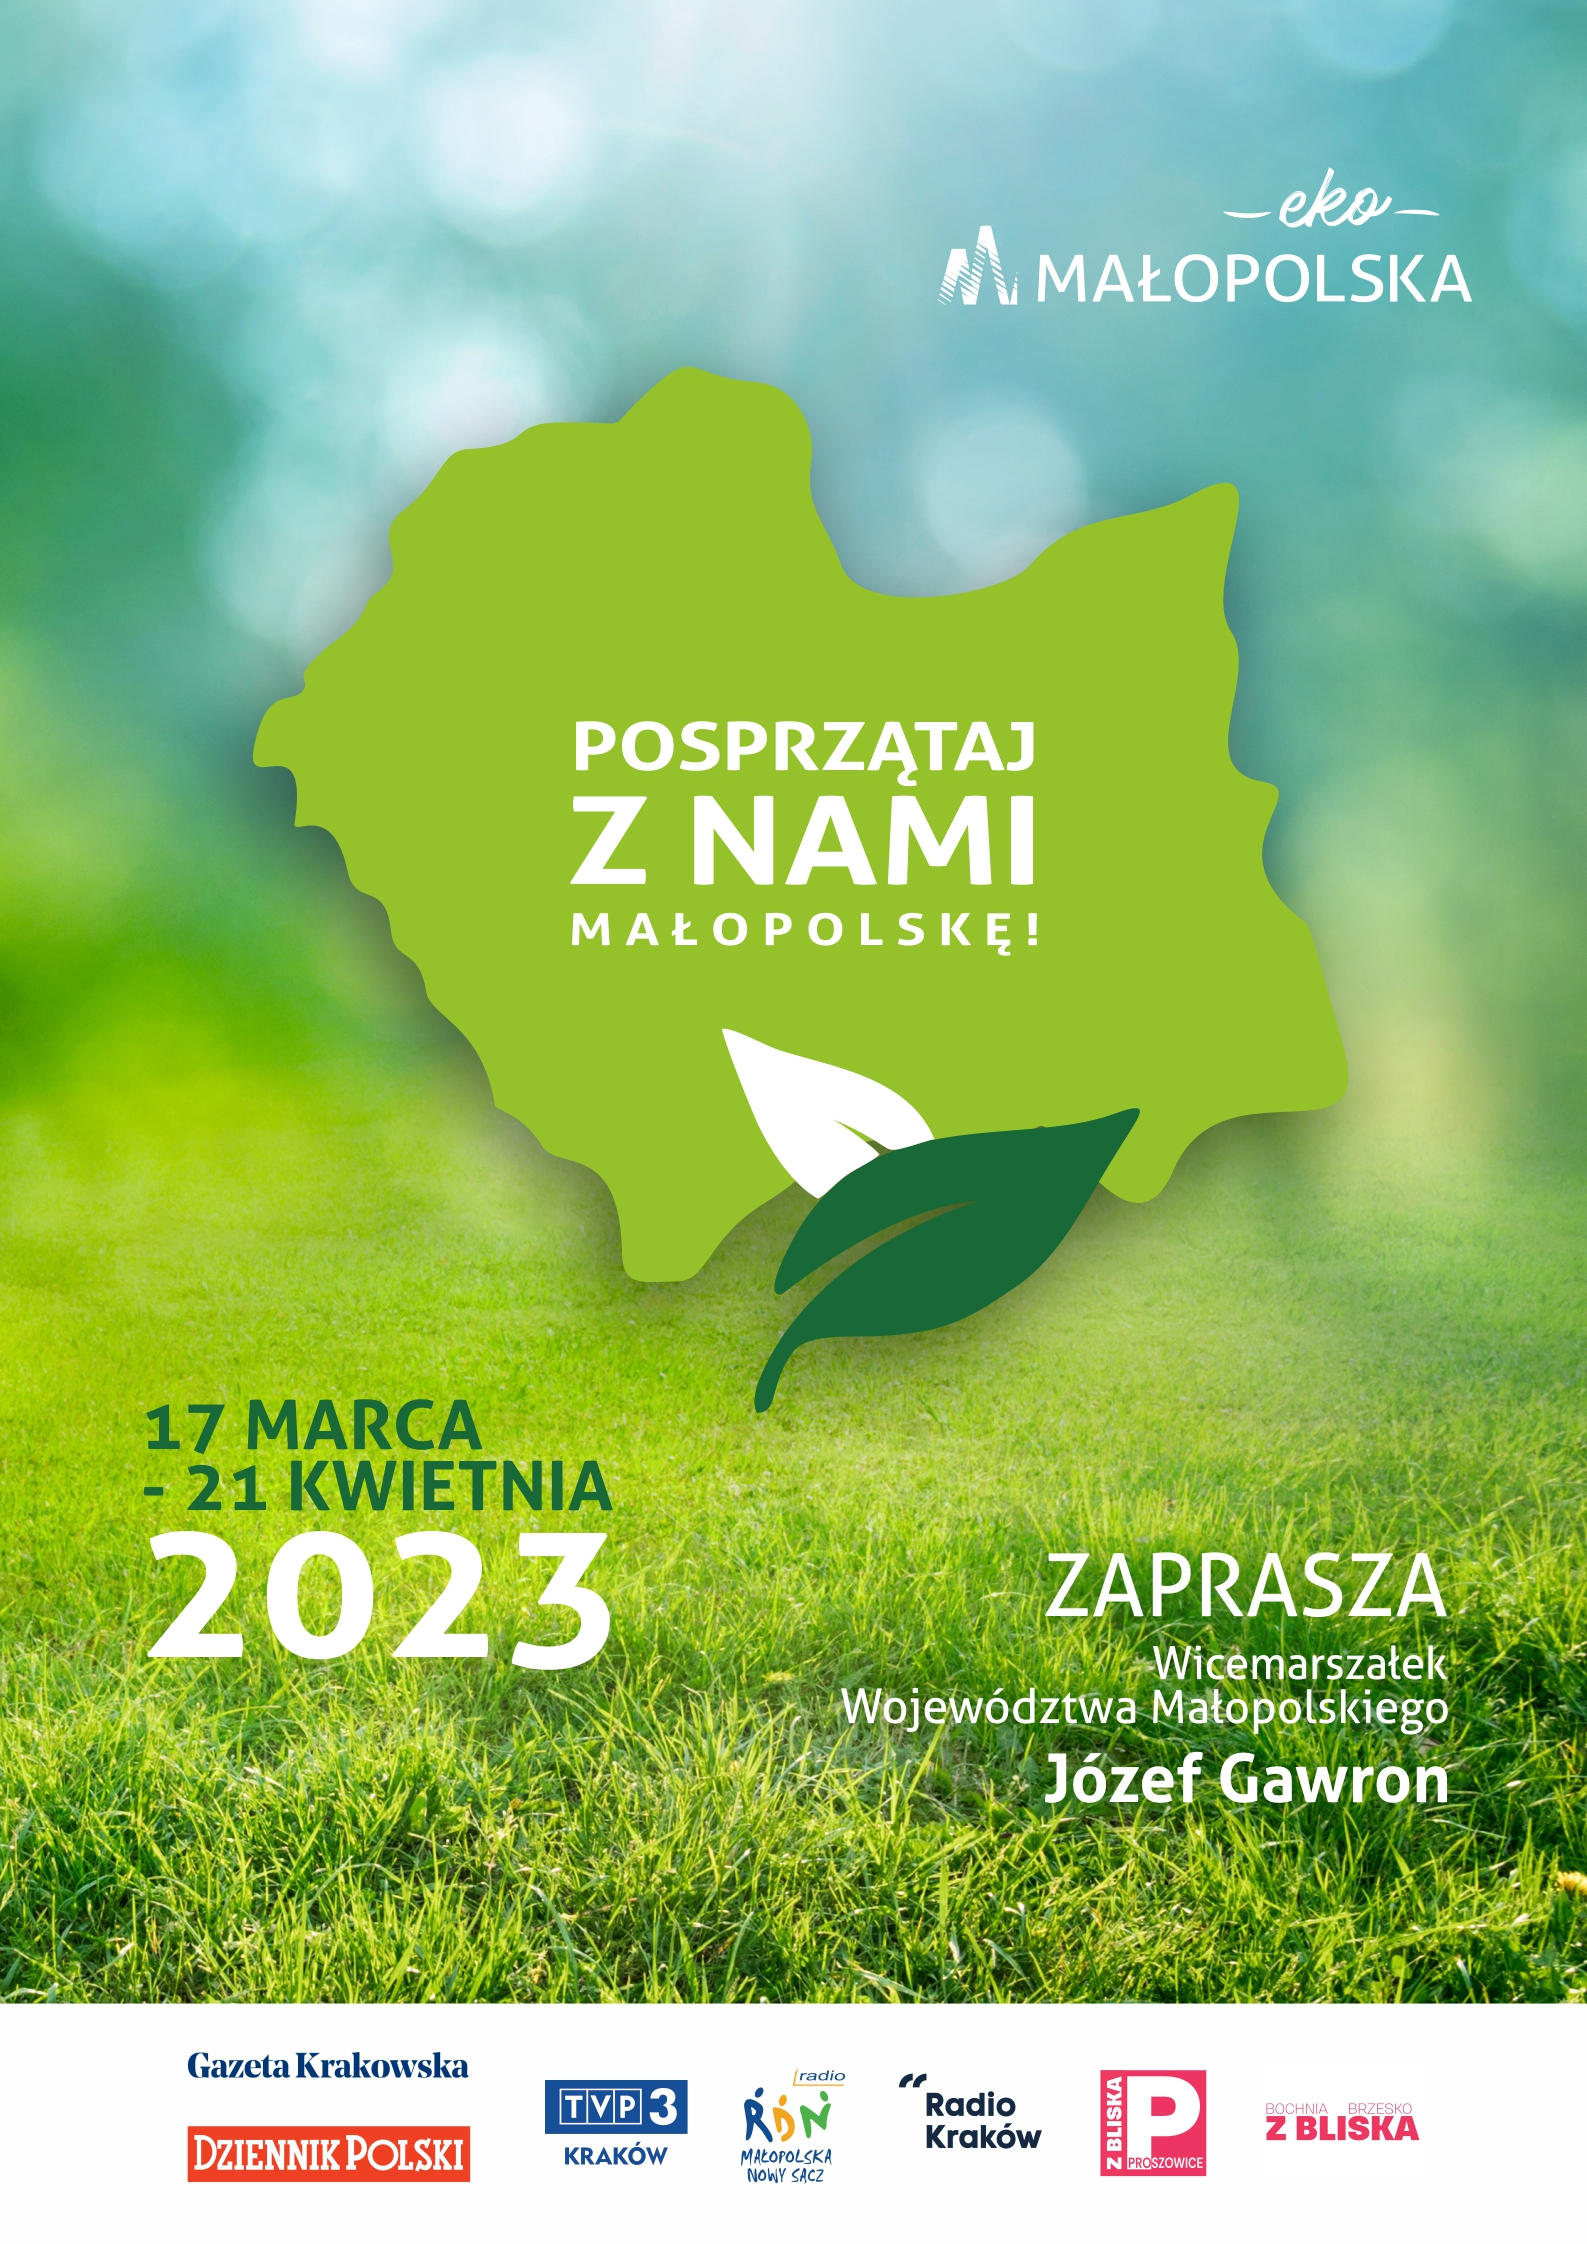 Posprzątaj z nami Małopolskę 2023! 17 marca – 21 kwietnia 2023 roku.